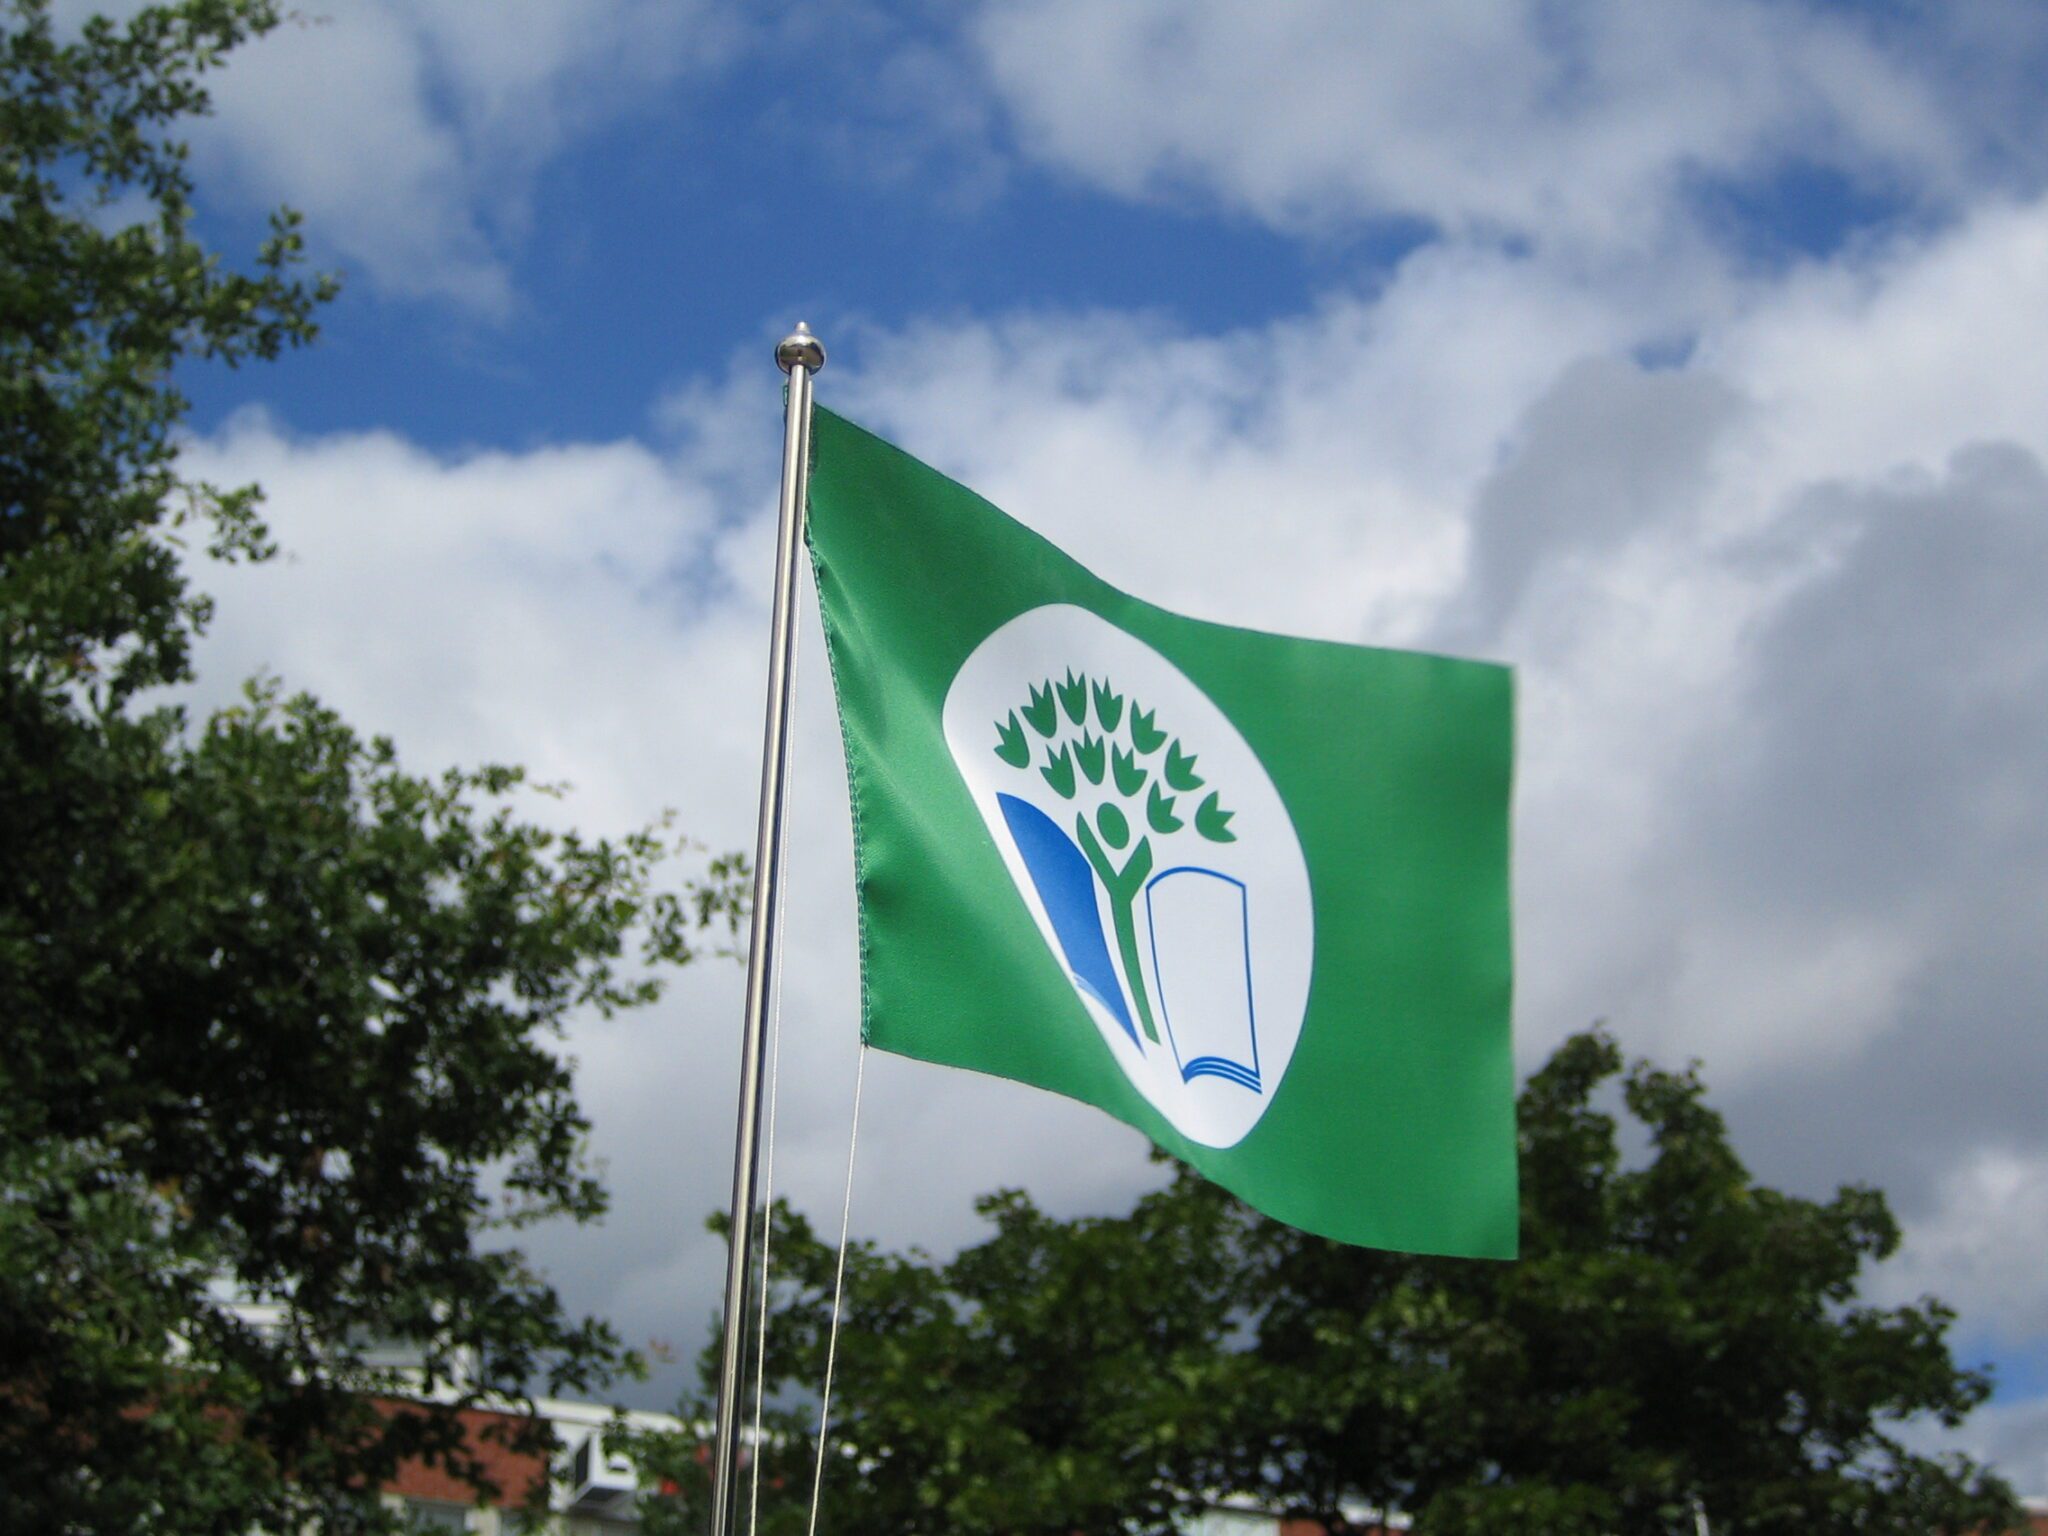 Vihreä lippu liehuu tuulessa.